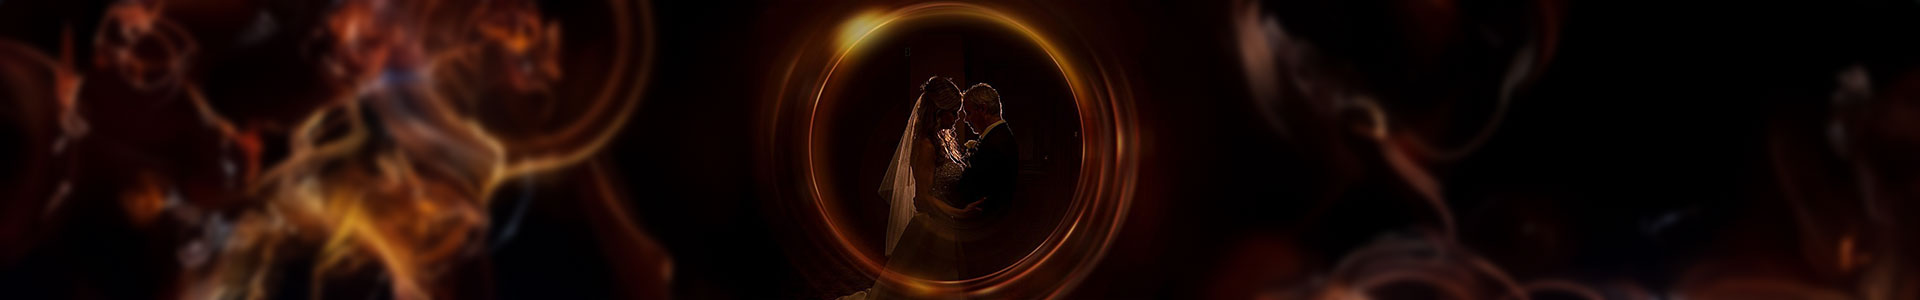 SheyiKreations Wedding Photography